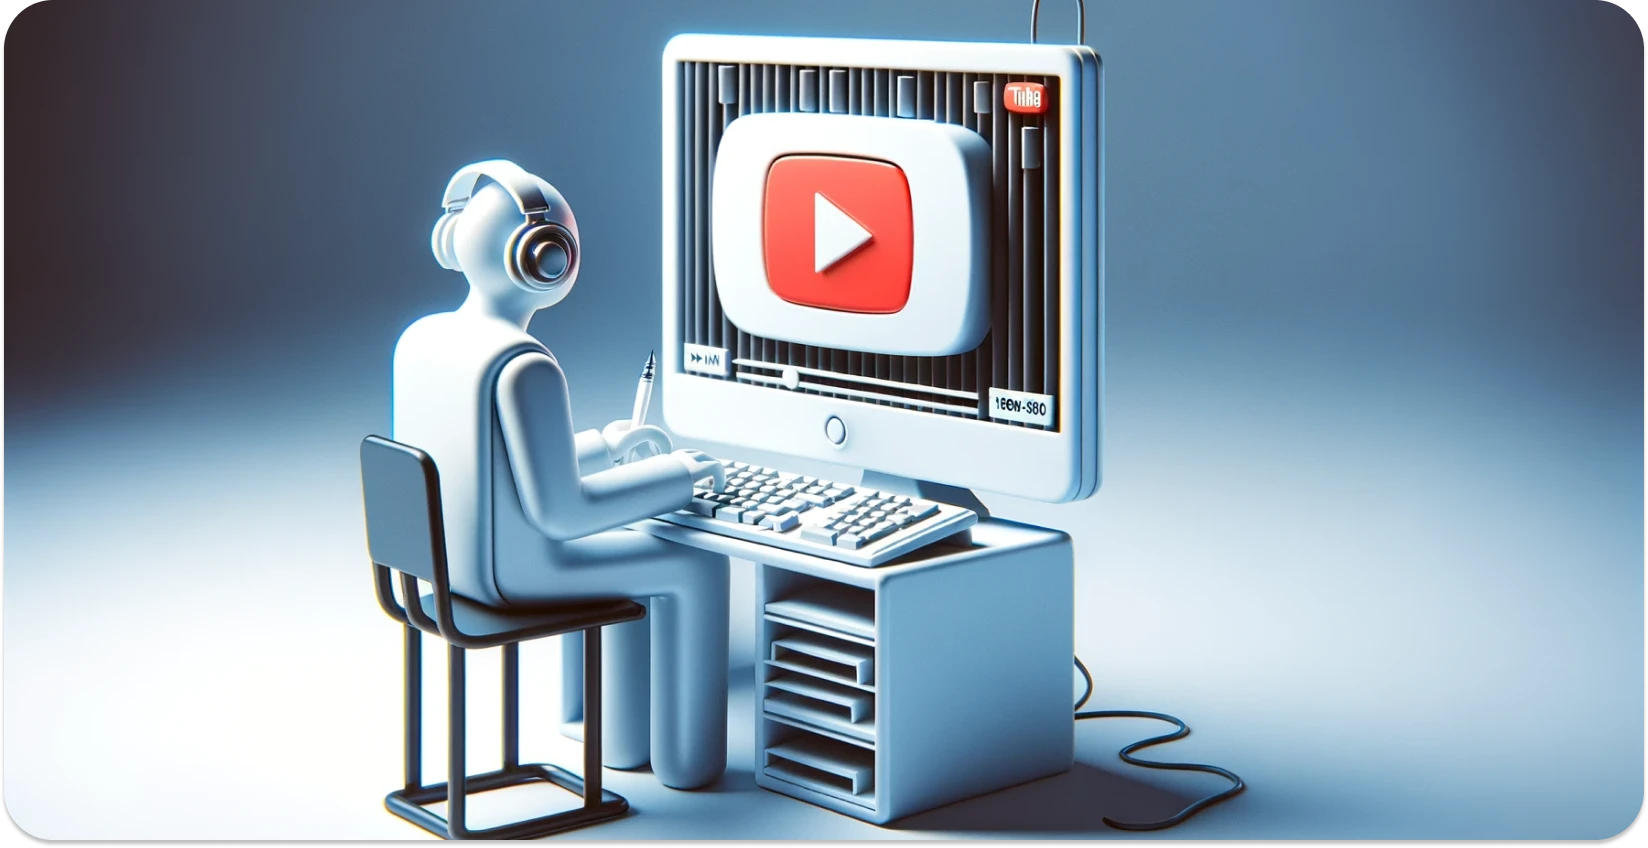 Ilustración estilizada de una persona usando una computadora con la interfaz de YouTube, centrándose en la transcripción.